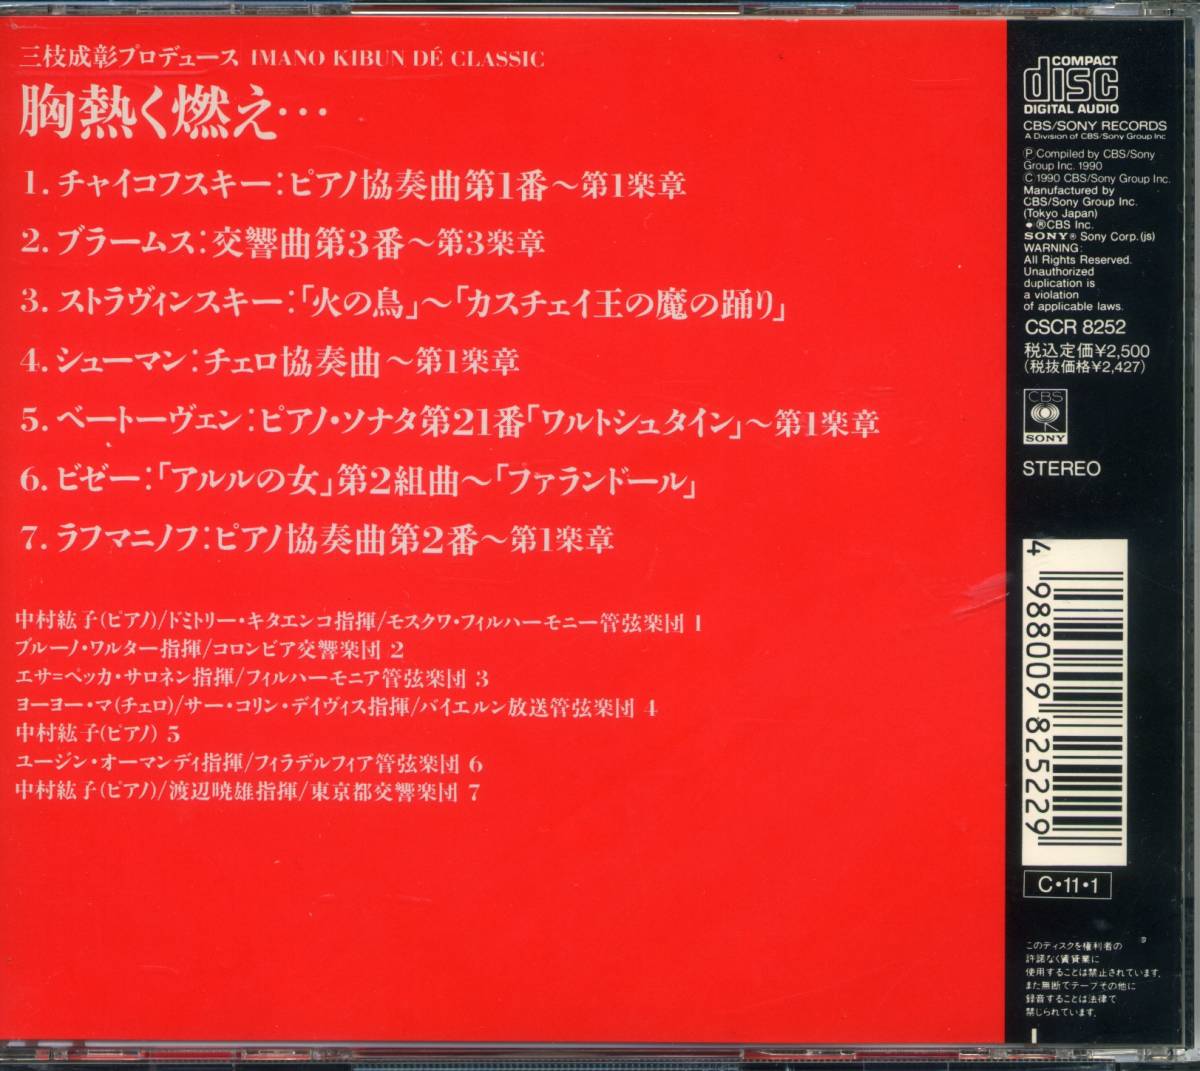 CD... гореть три ветка .. производить Classic * сборник тщательно отобранный все 7 искривление сбор запись Nakamura ..( фортепьяно )yo-yo-*ma( виолончель )